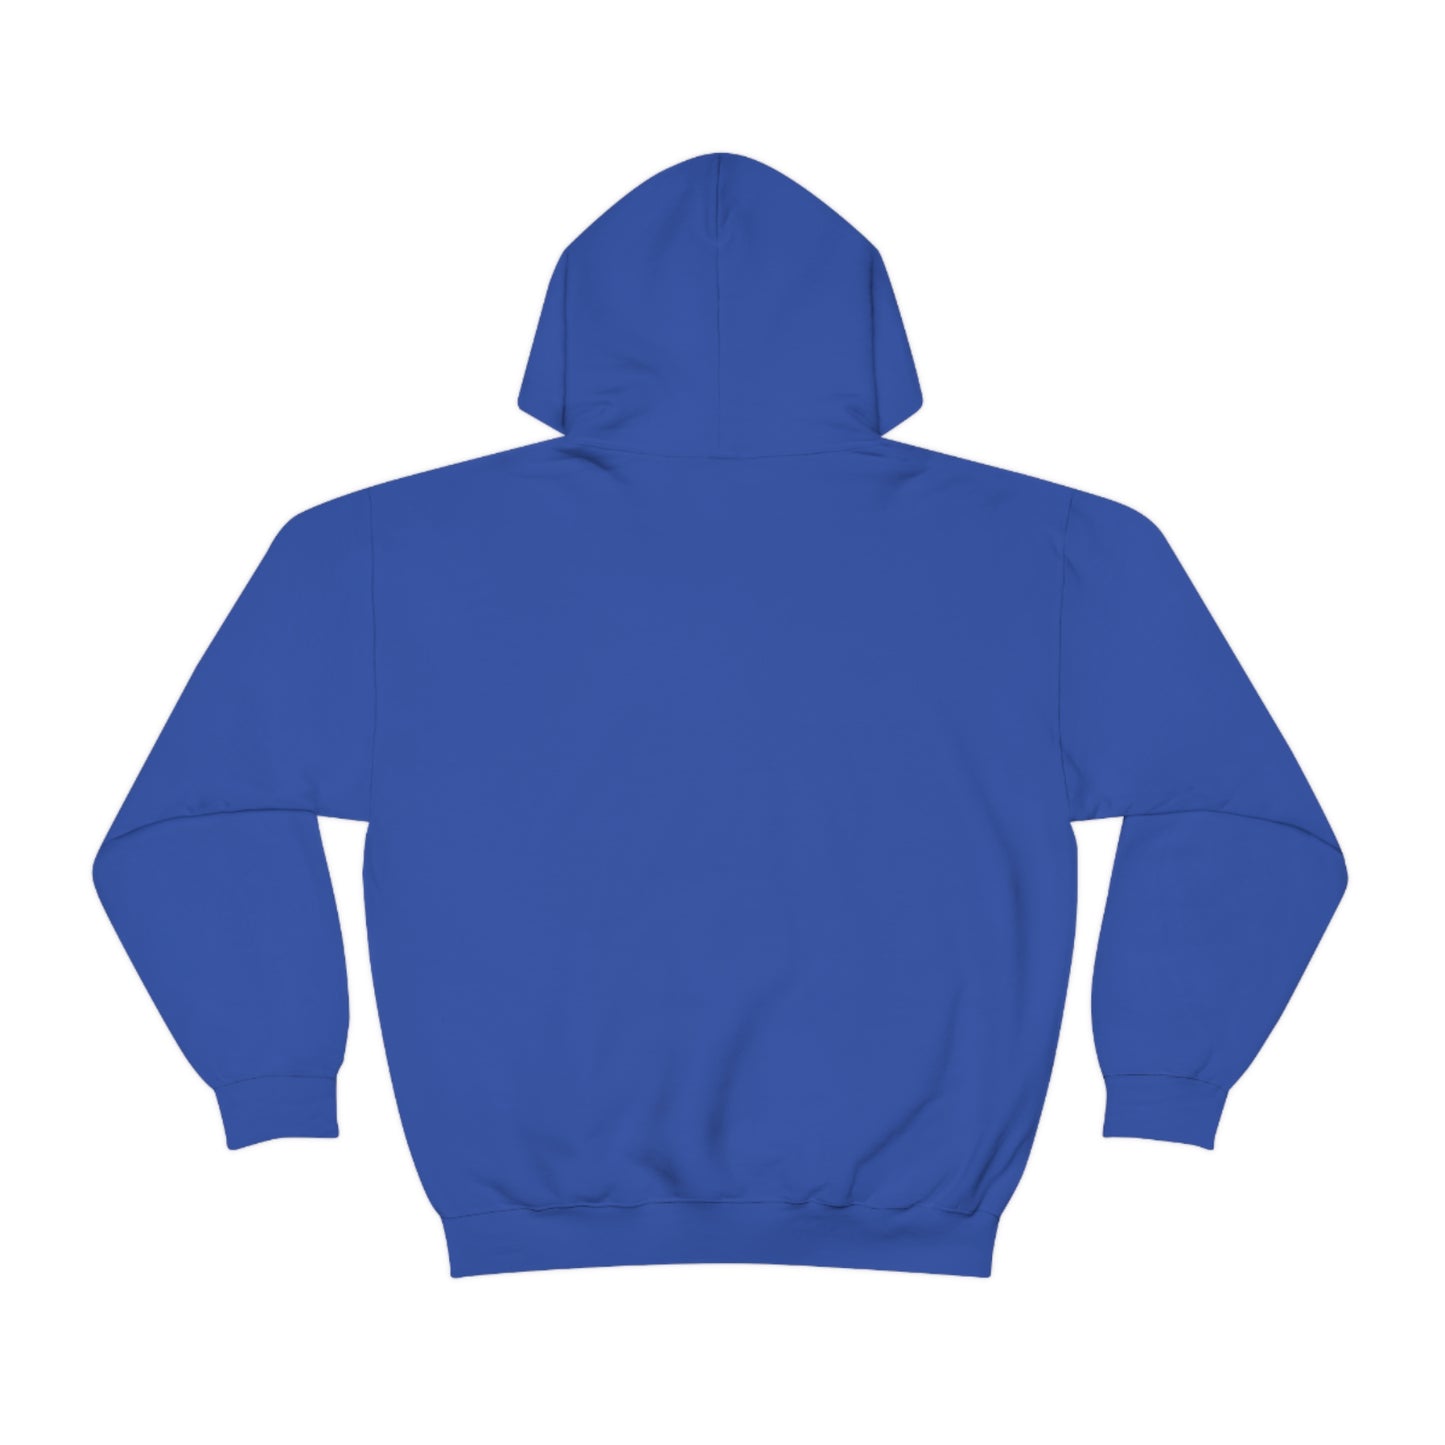 Paper Bear Unisex Heavy Blend™ Hooded Sweatshirt